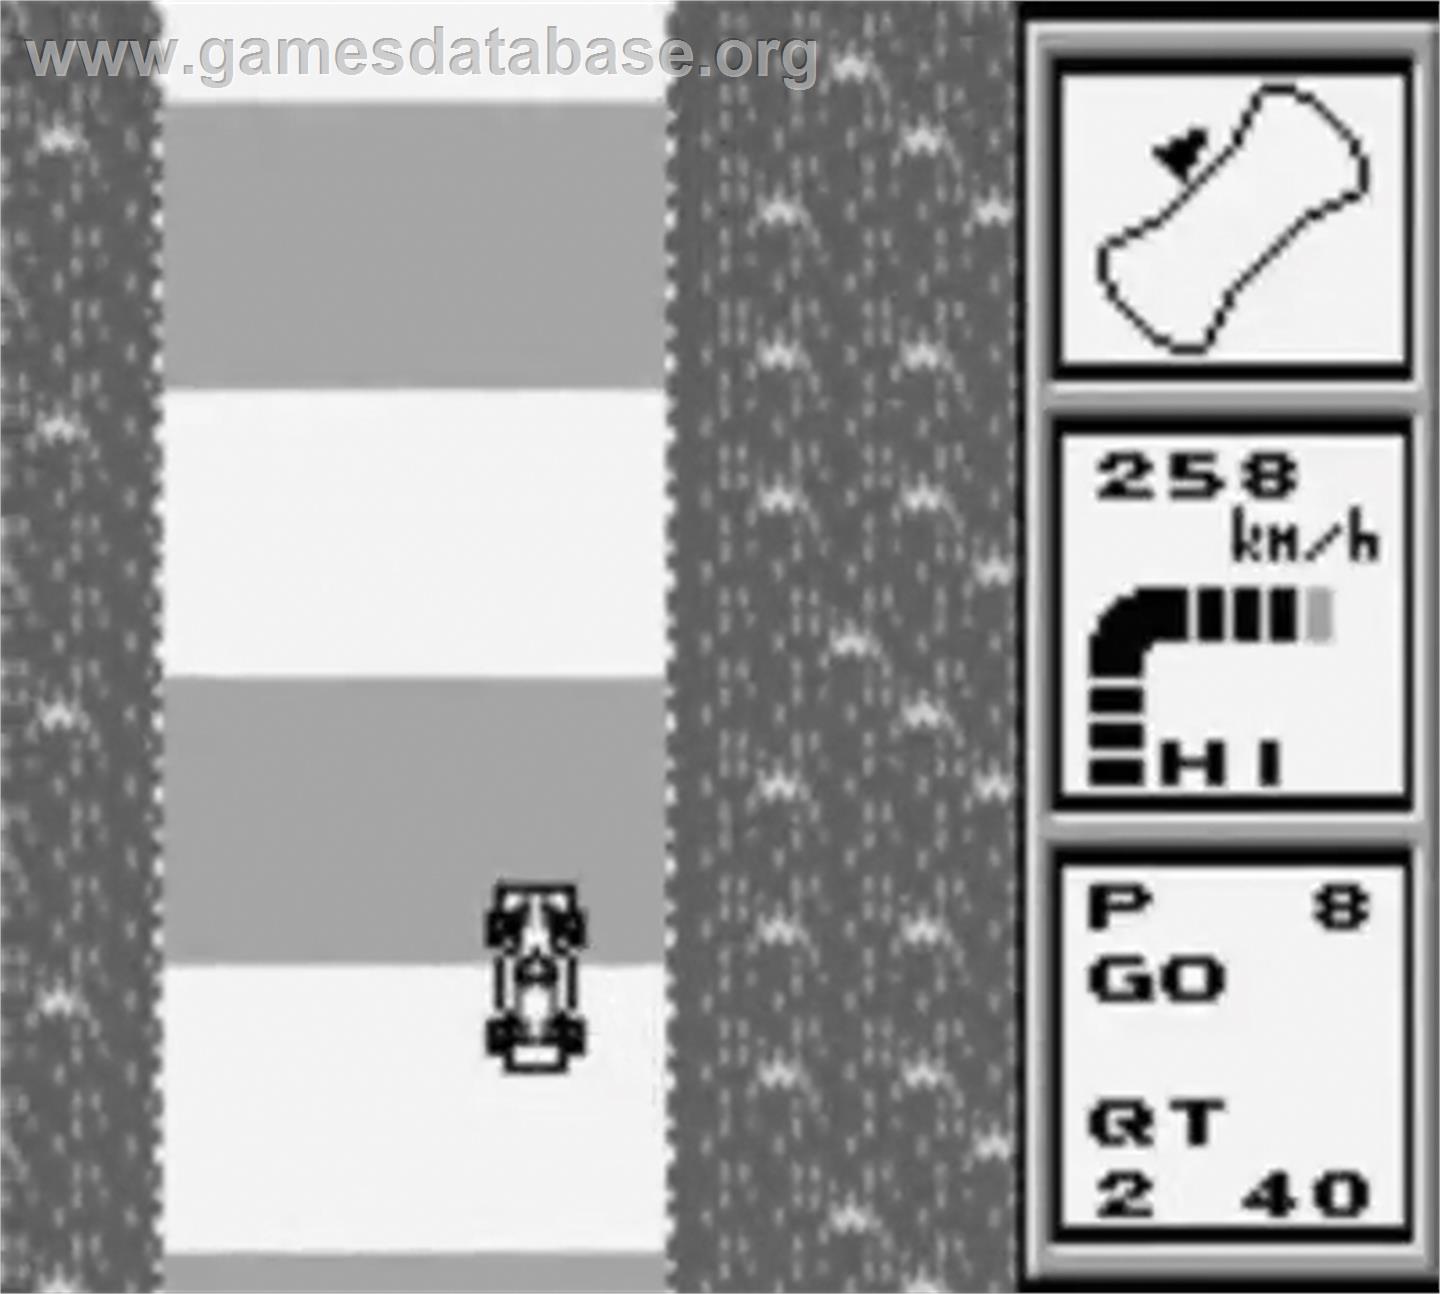 World Circuit Series - Nintendo Game Boy - Artwork - In Game